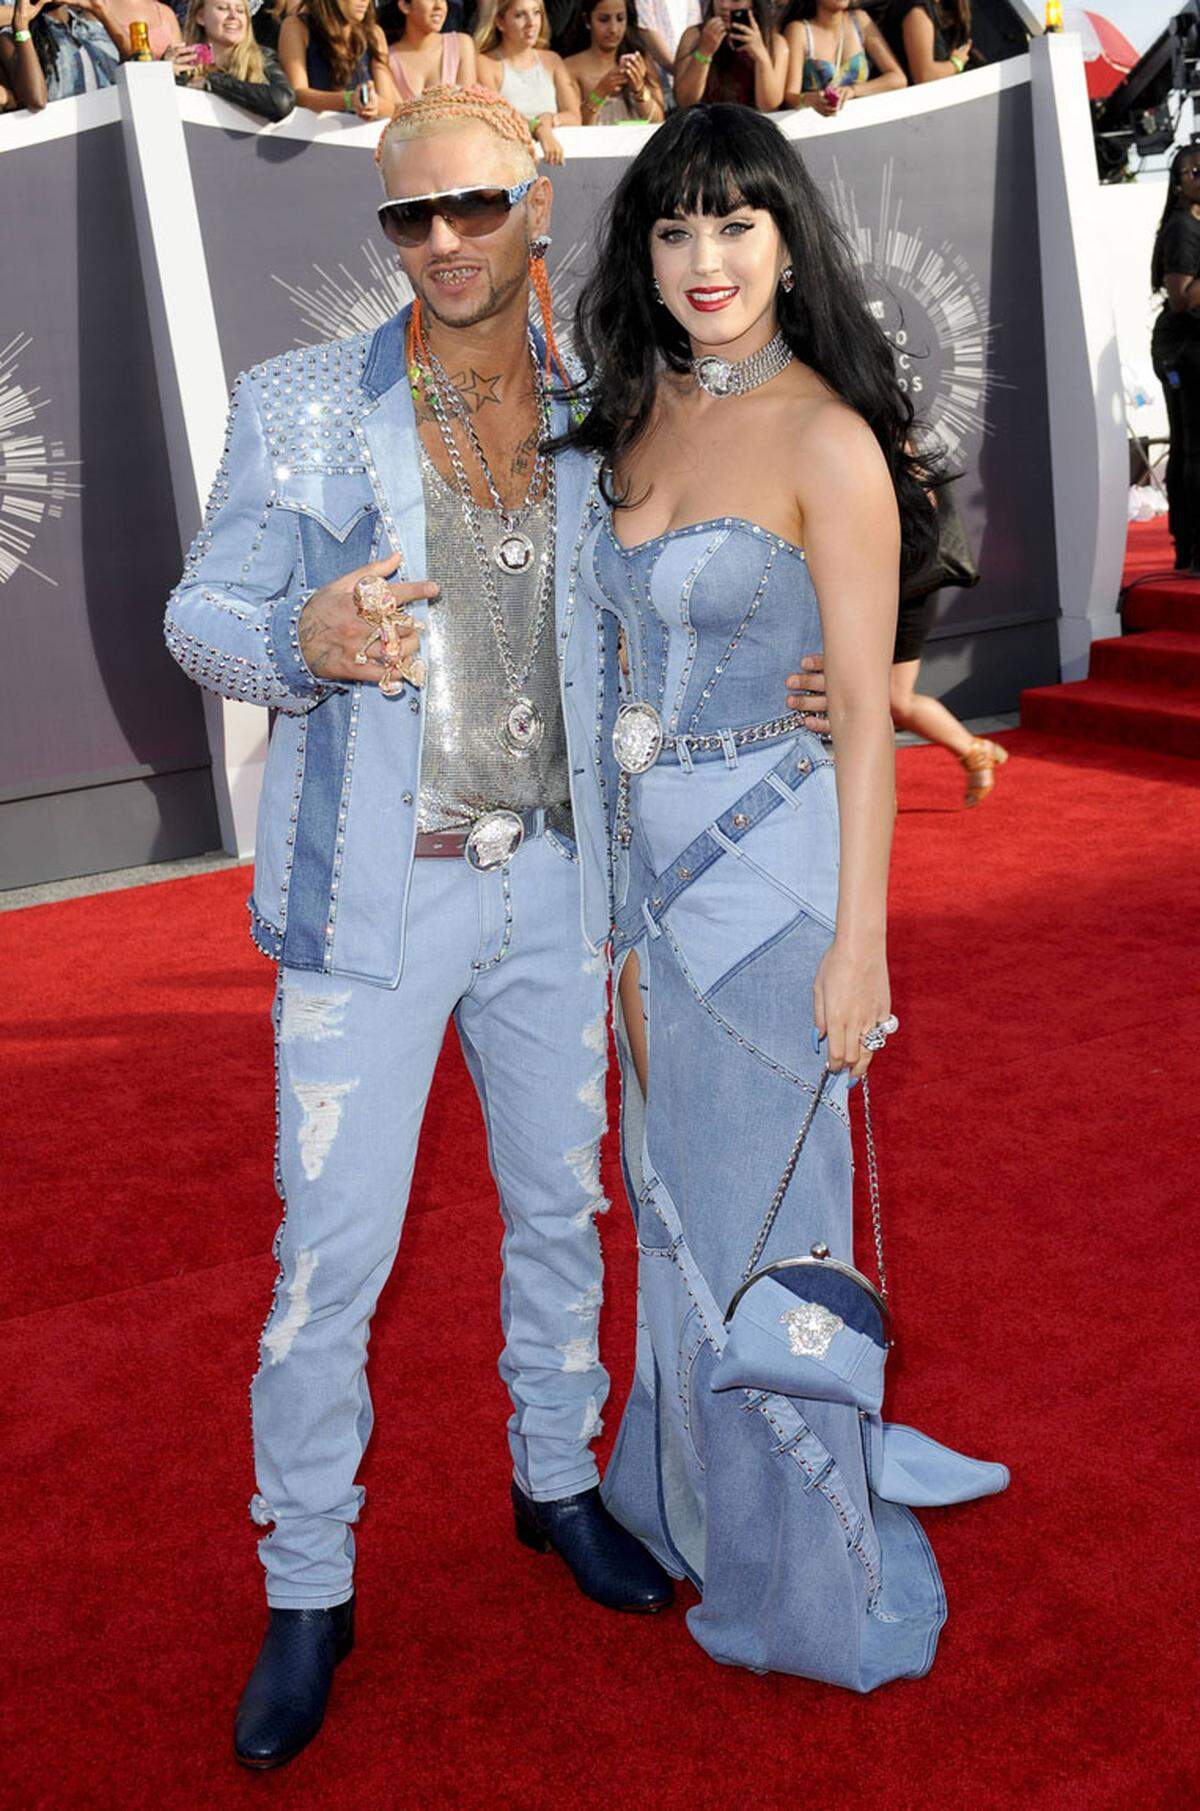 Als Musikerin Katy Perry und Rapper Riff Raff bei den MTV Video Music Awards im jeanslastigen Partnerlook kamen, wird sich wohl der ein oder andere an das Jahr 2001 zurück erinnert haben.